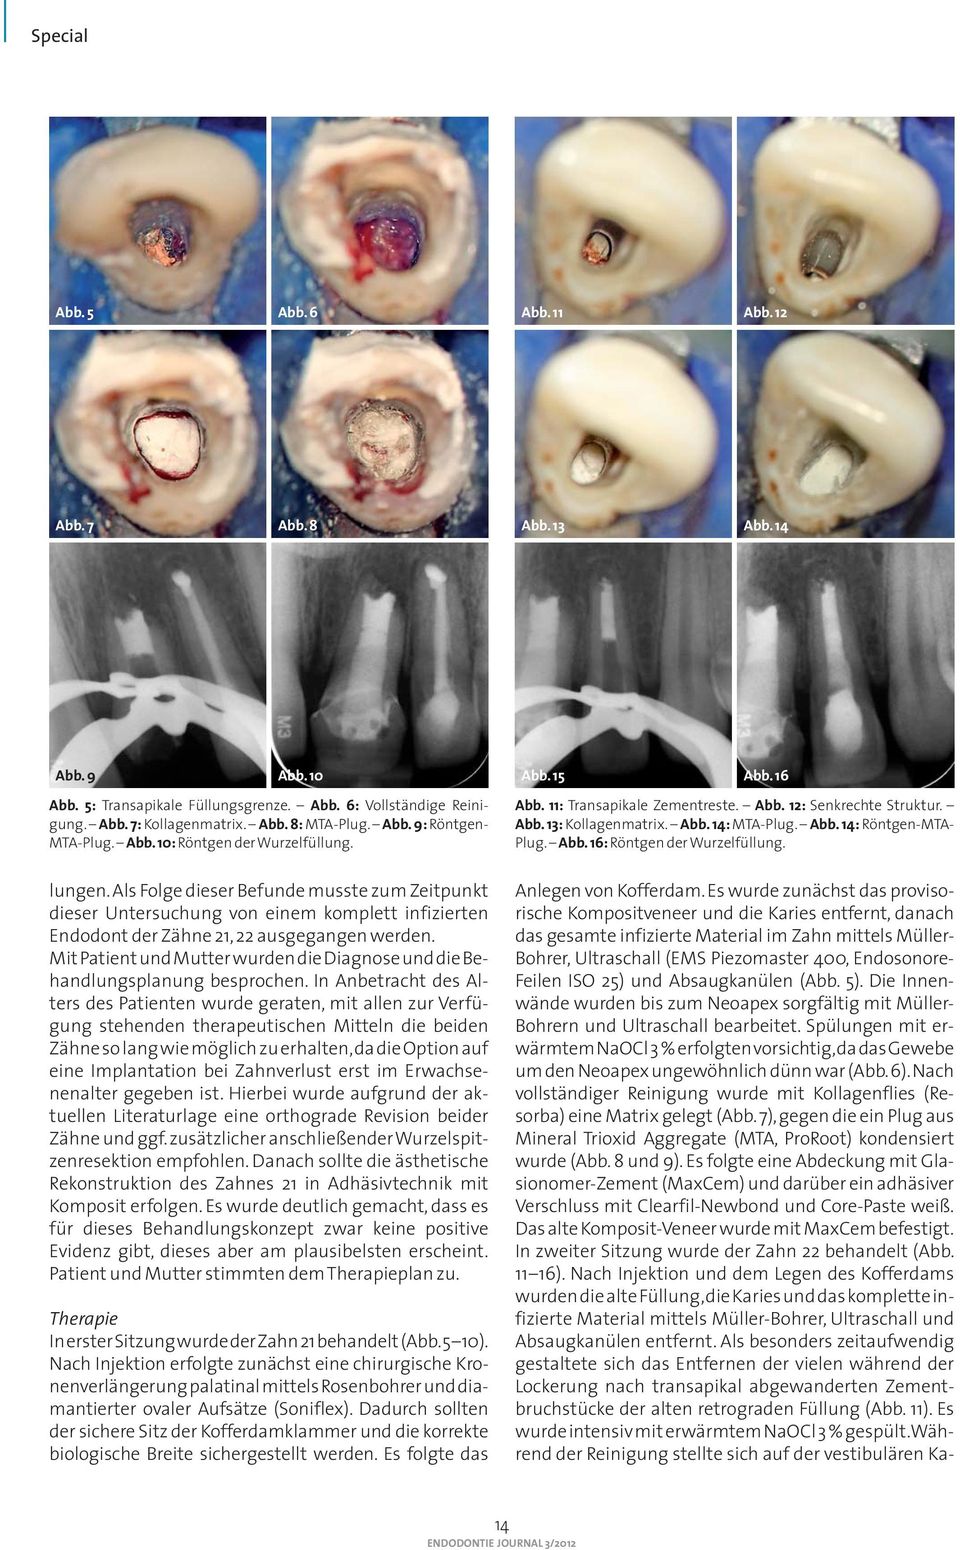 Als Folge dieser Befunde musste zum Zeitpunkt dieser Untersuchung von einem komplett infizierten Endodont der Zähne 21, 22 ausgegangen werden.